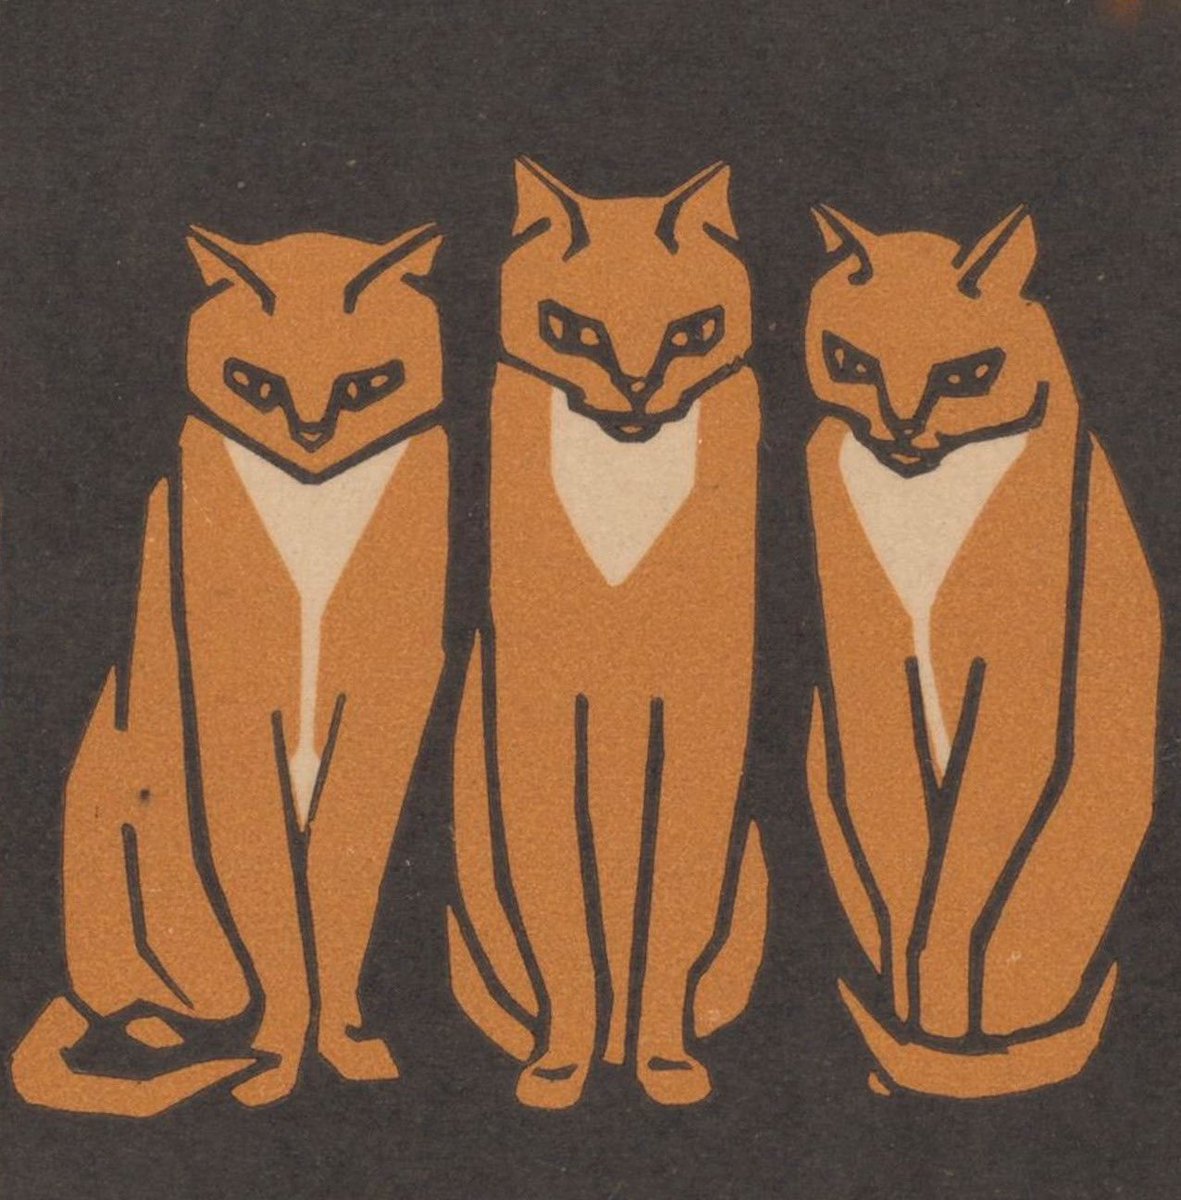 #CaturdayMood 

🏛 @rijksmuseum 
Drie katten, Julie de Graag, 1916
#Caturday